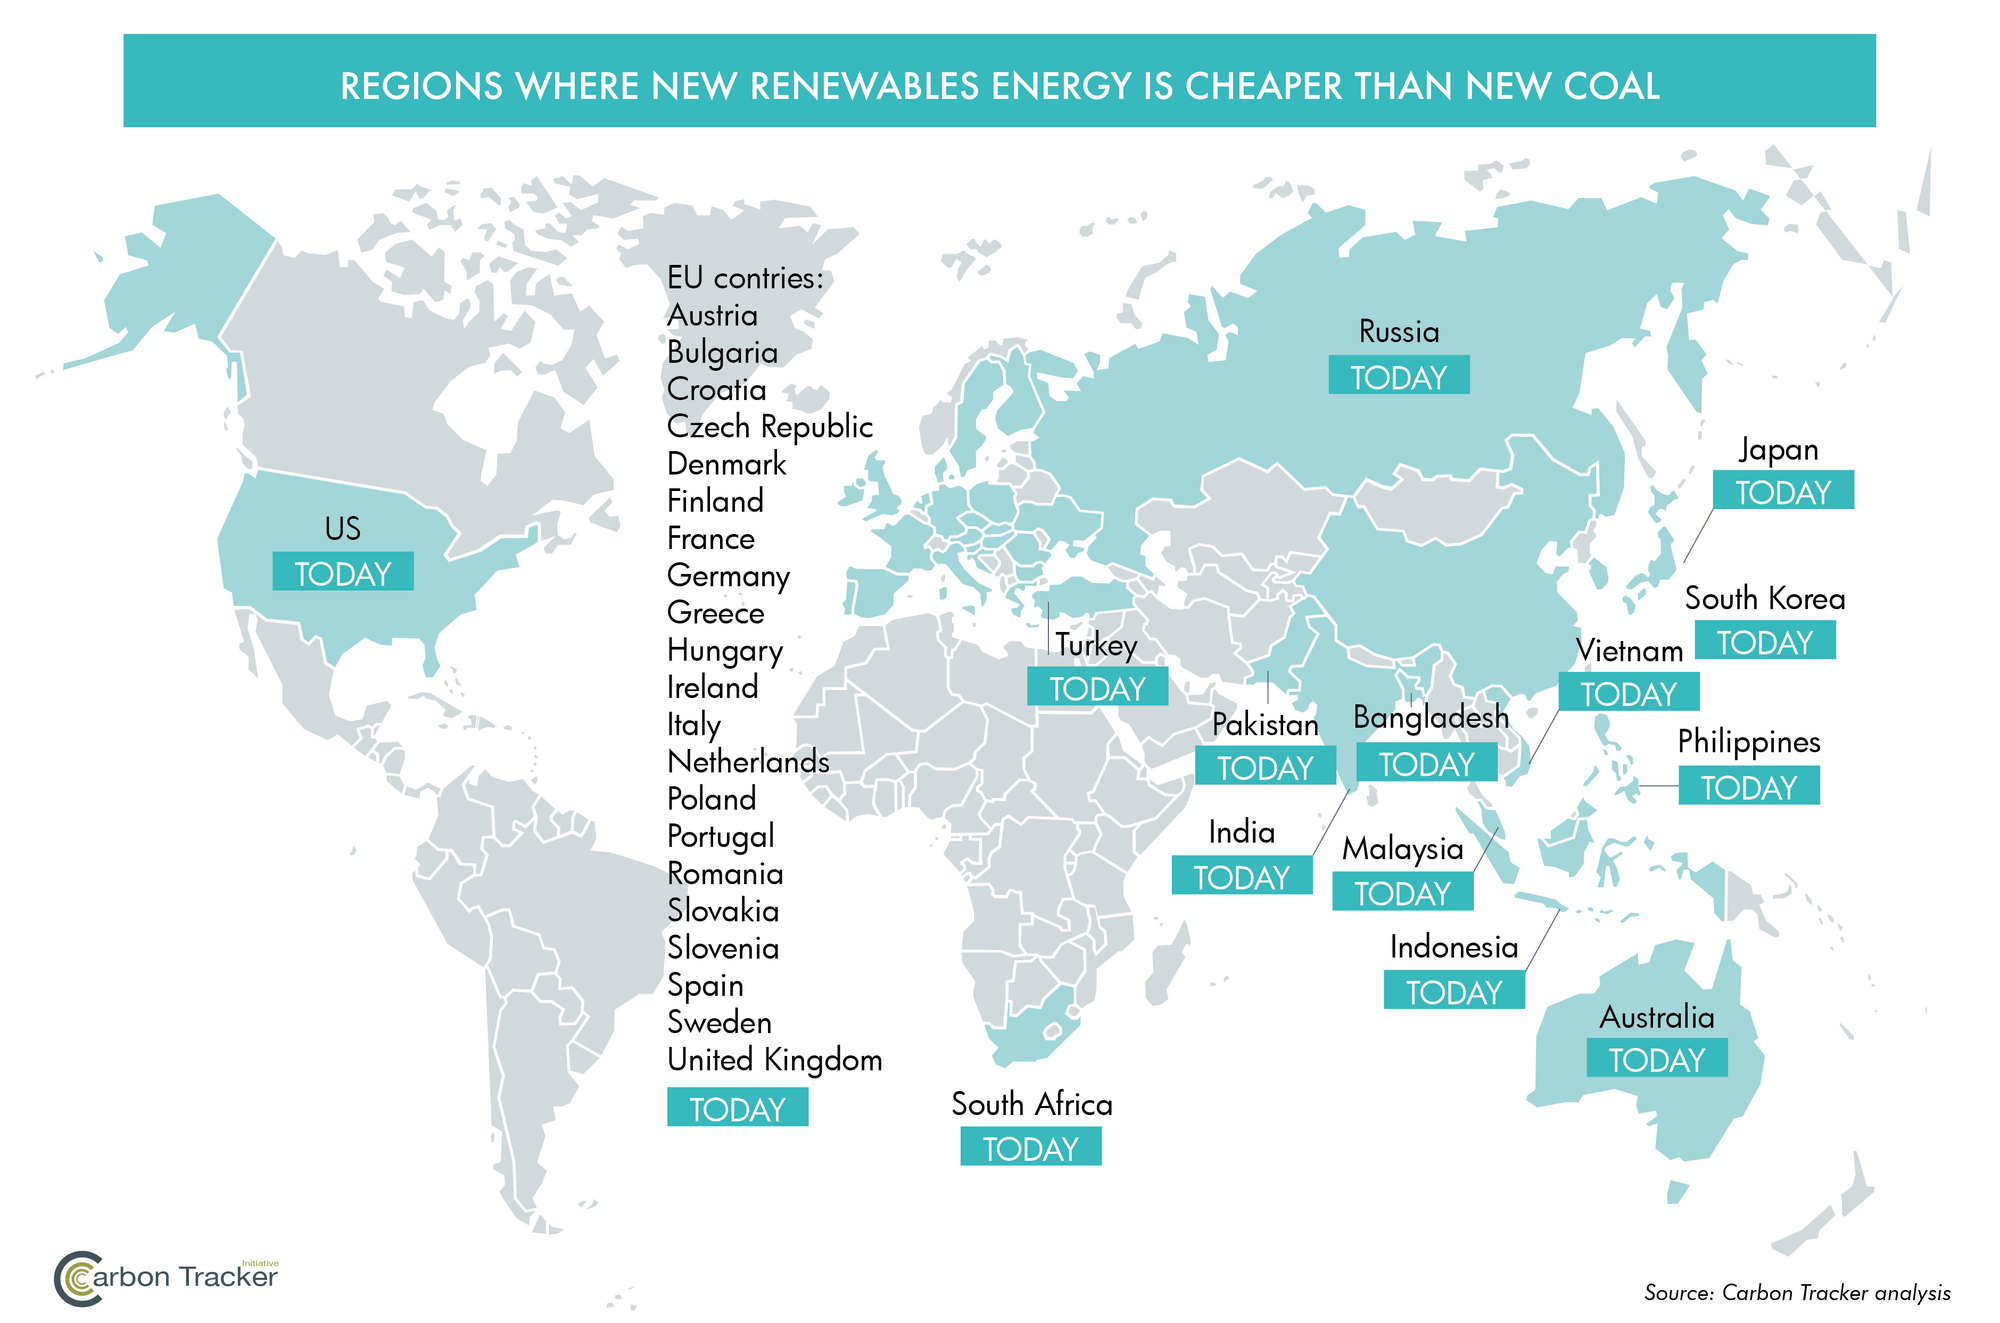 In diesen Ländern sind neue regenerative Energieprojekte günstiger als neue Kohlekraftwerke.